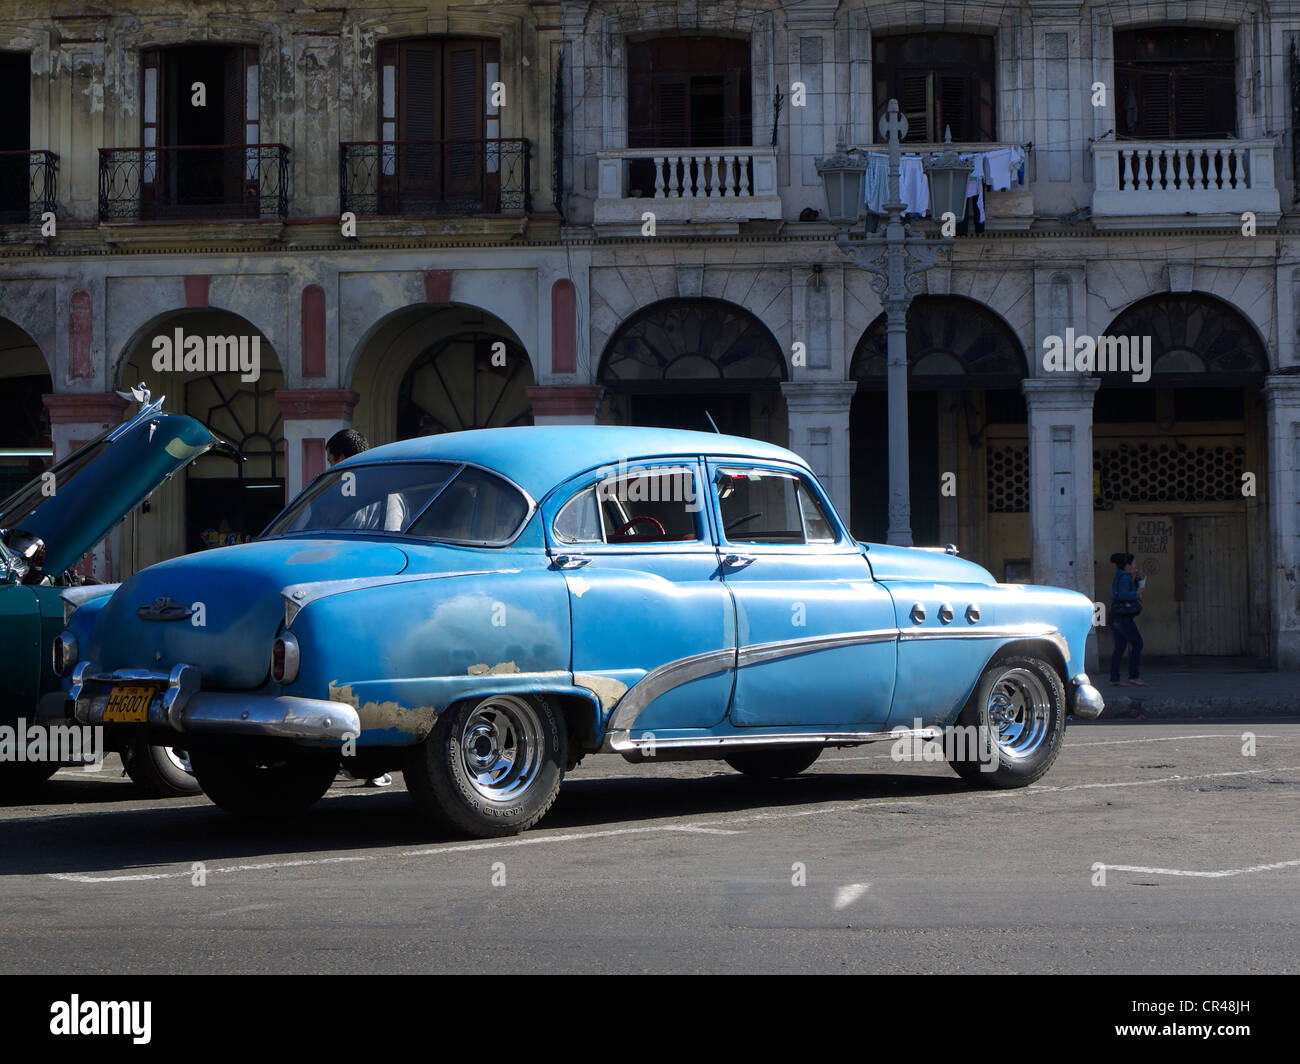 American Vintage voiture en avant de vieilles maisons avec arcade, La Havane, Cuba, Amérique Latine Banque D'Images